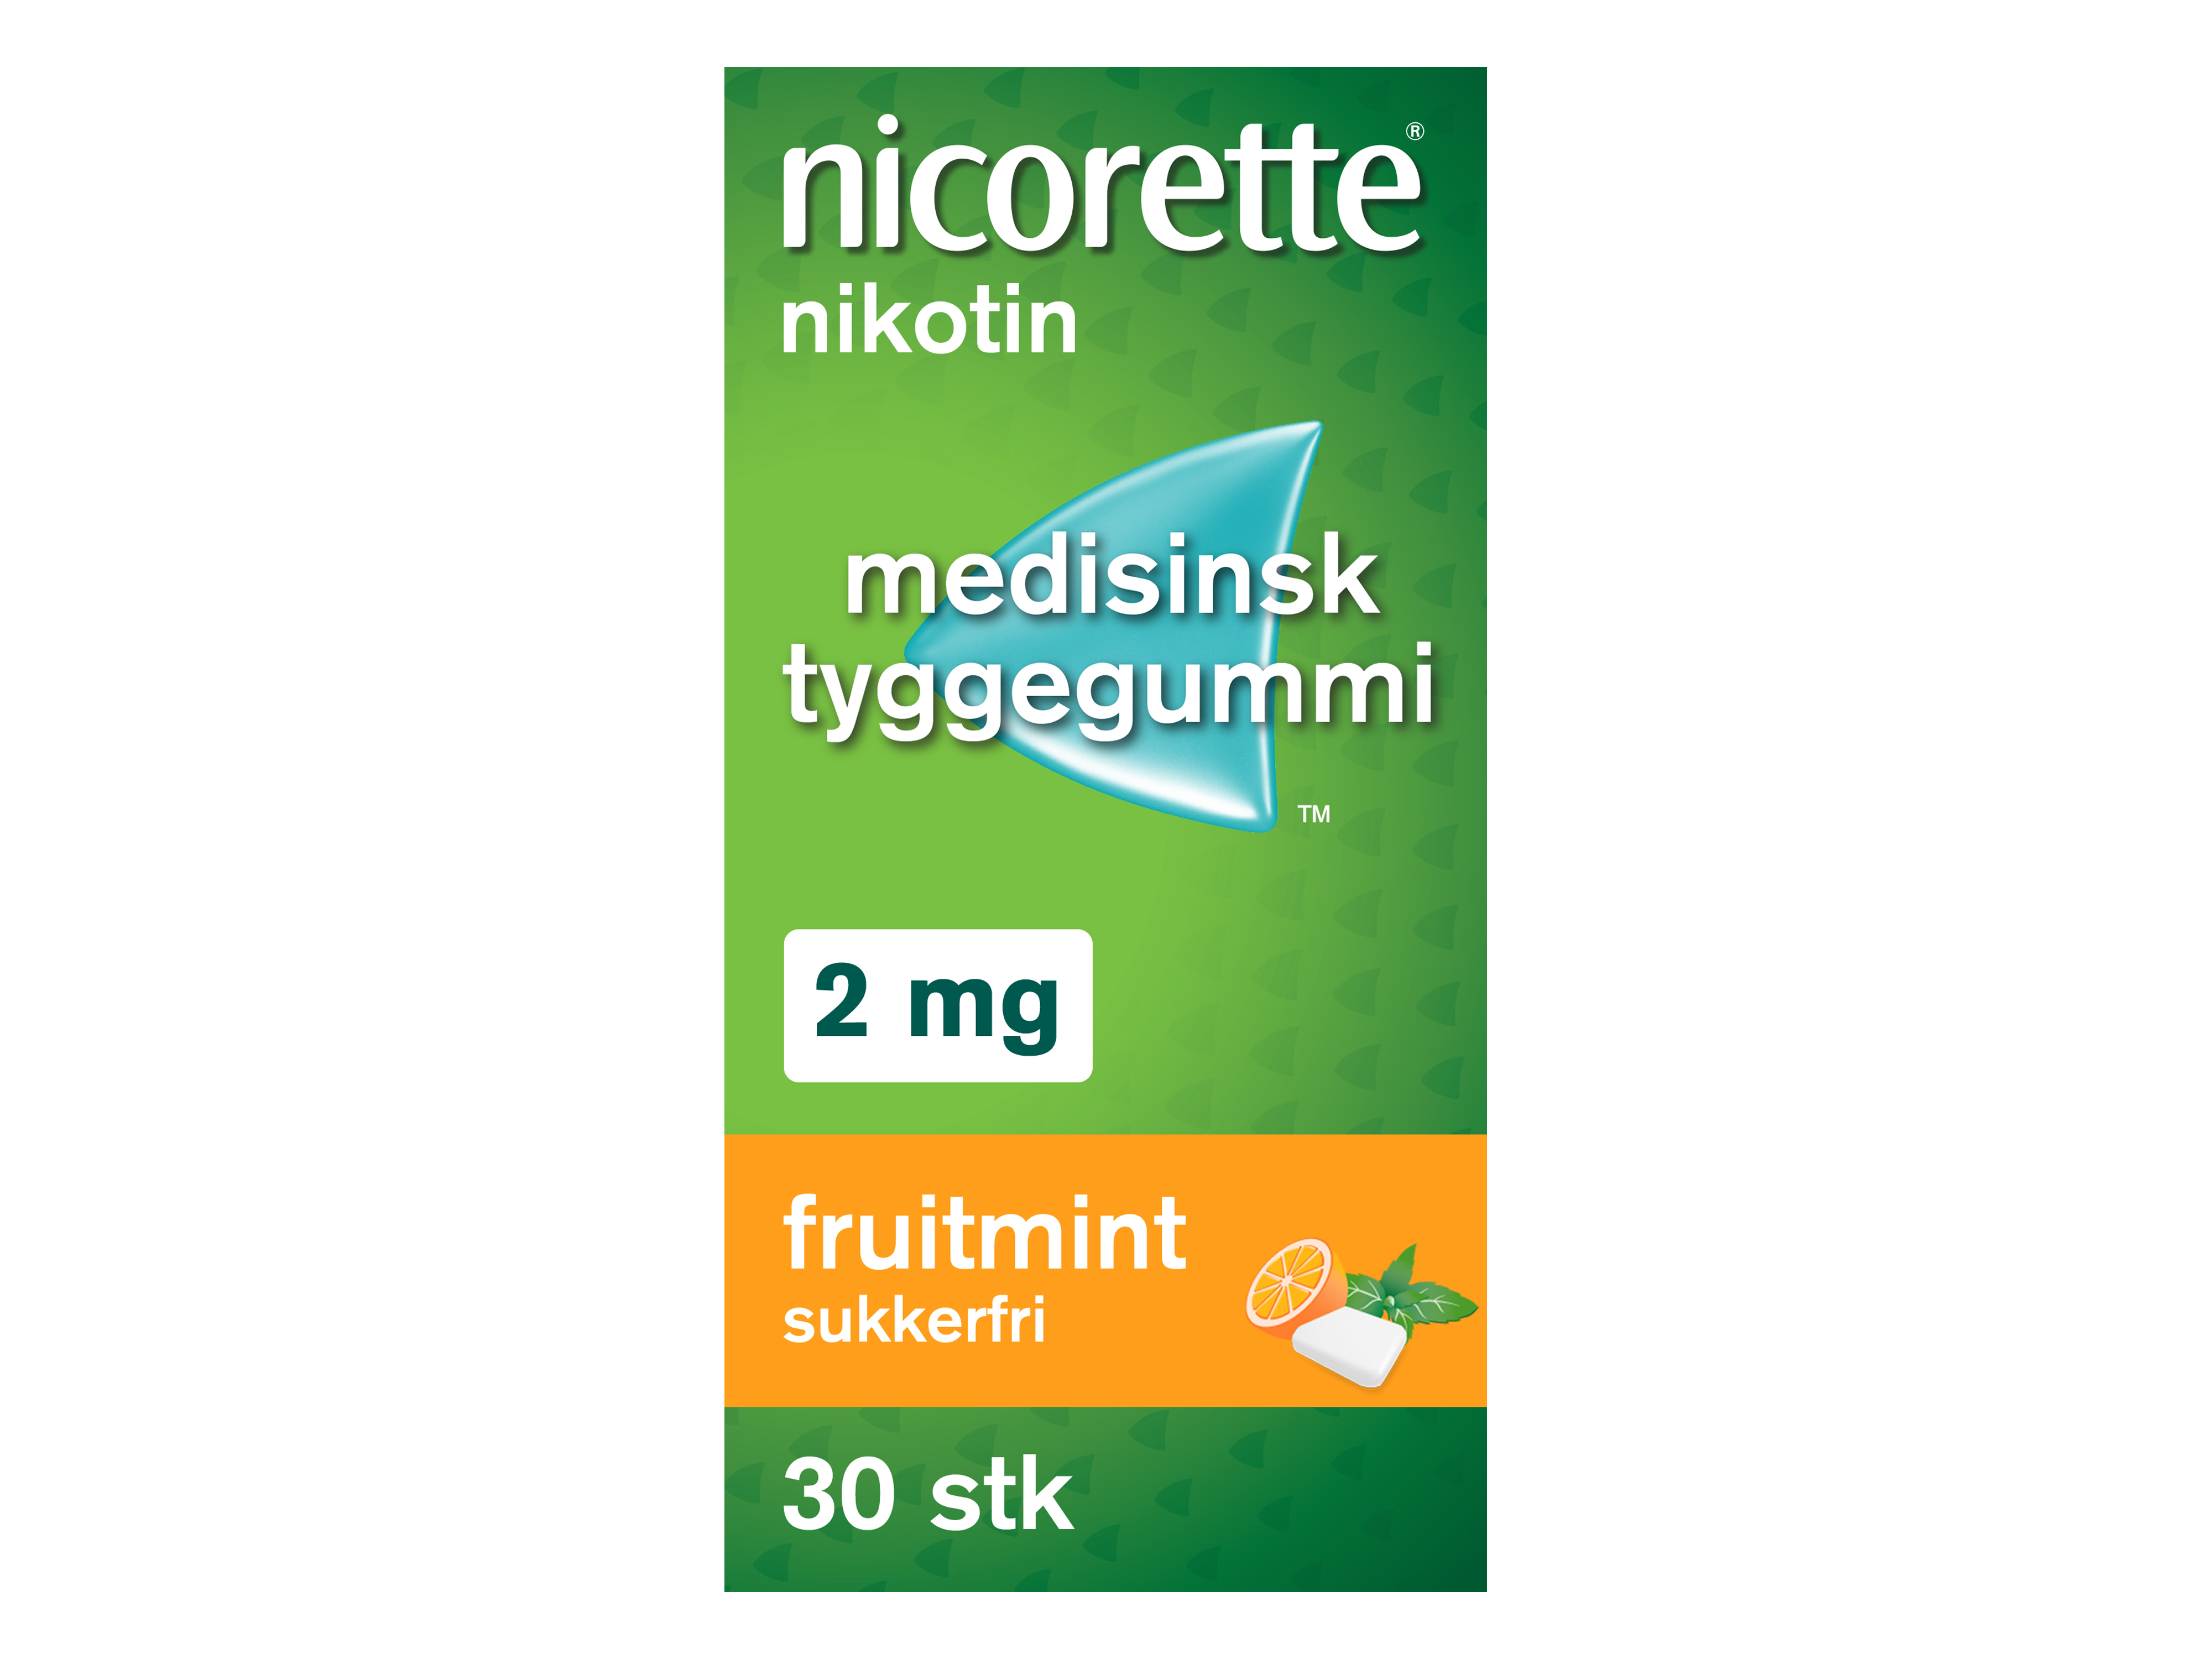 Nicorette Tyggegummi, 2 mg nikotin, Fruitmint 30 stk., Slutte å røyke